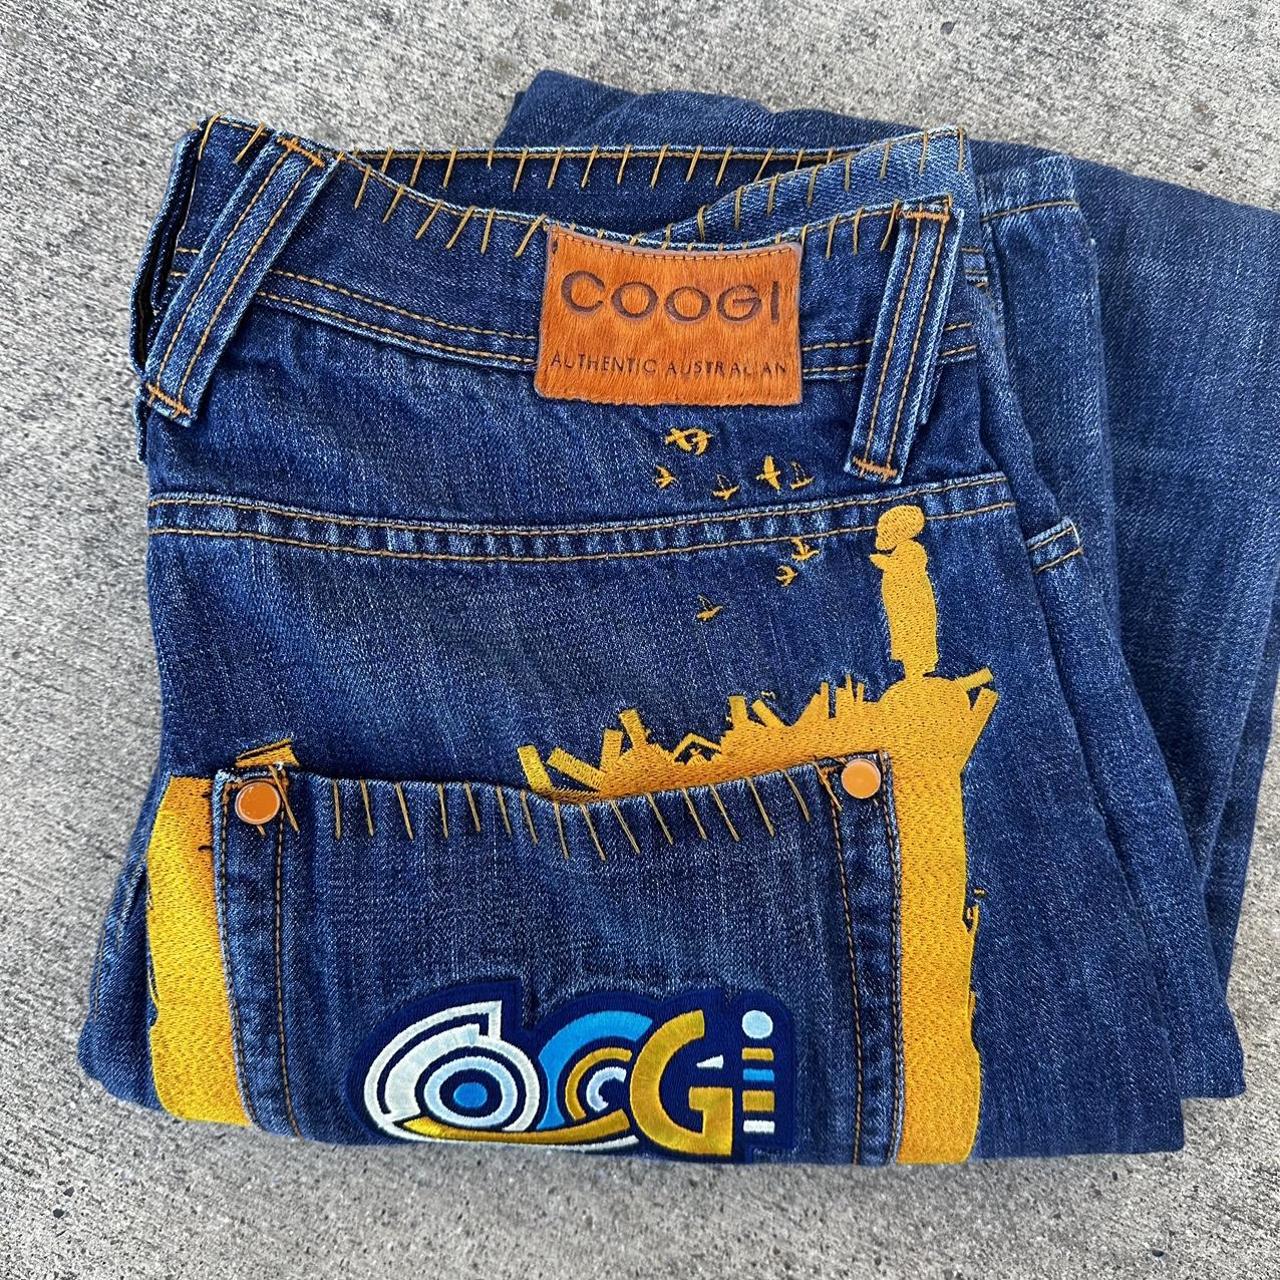 Coogi Men's Blue Jeans